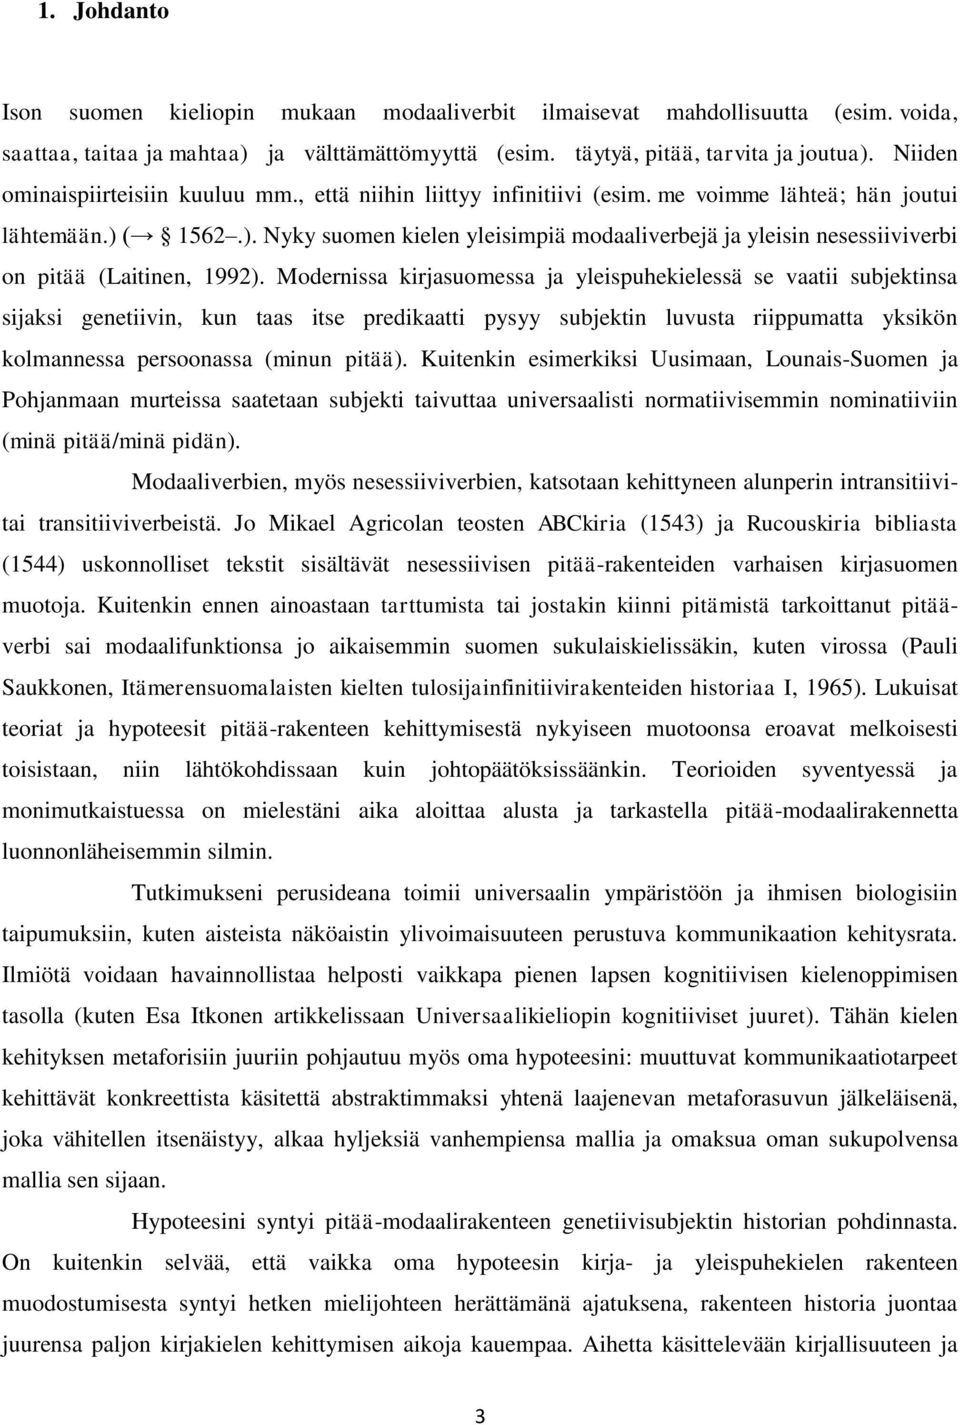 ( 1562.). Nyky suomen kielen yleisimpiä modaaliverbejä ja yleisin nesessiiviverbi on pitää (Laitinen, 1992).